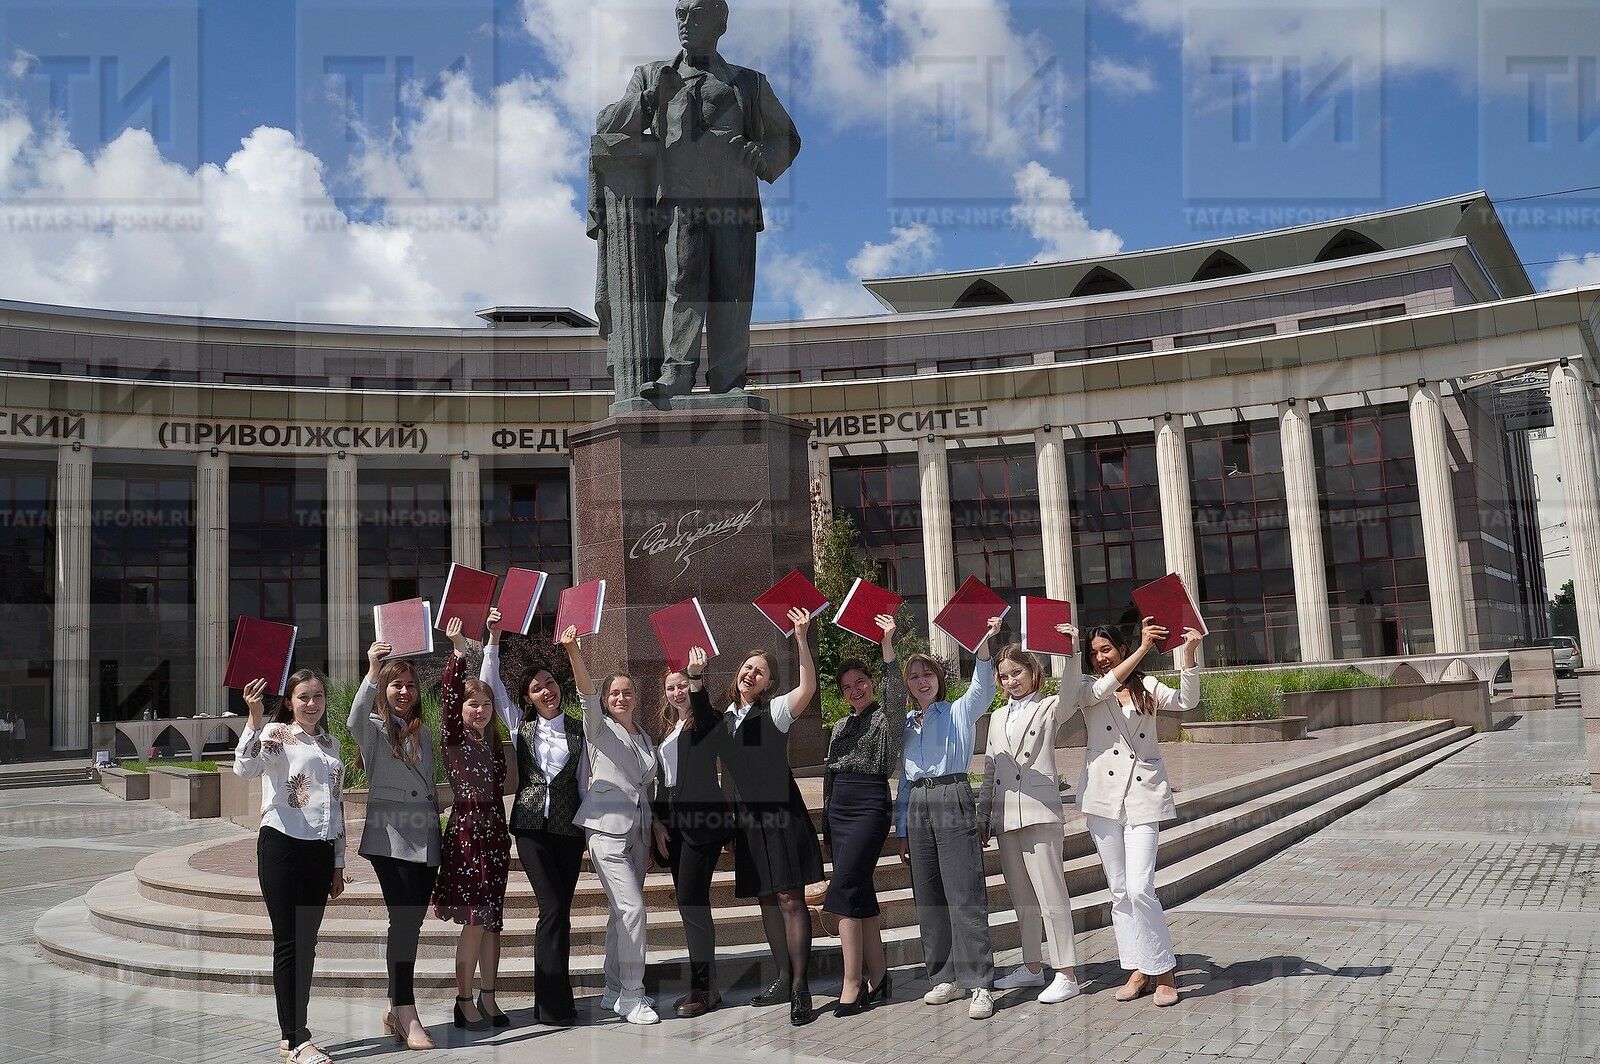 22 министра образования из 17 стран станут участниками международного форума в Казани